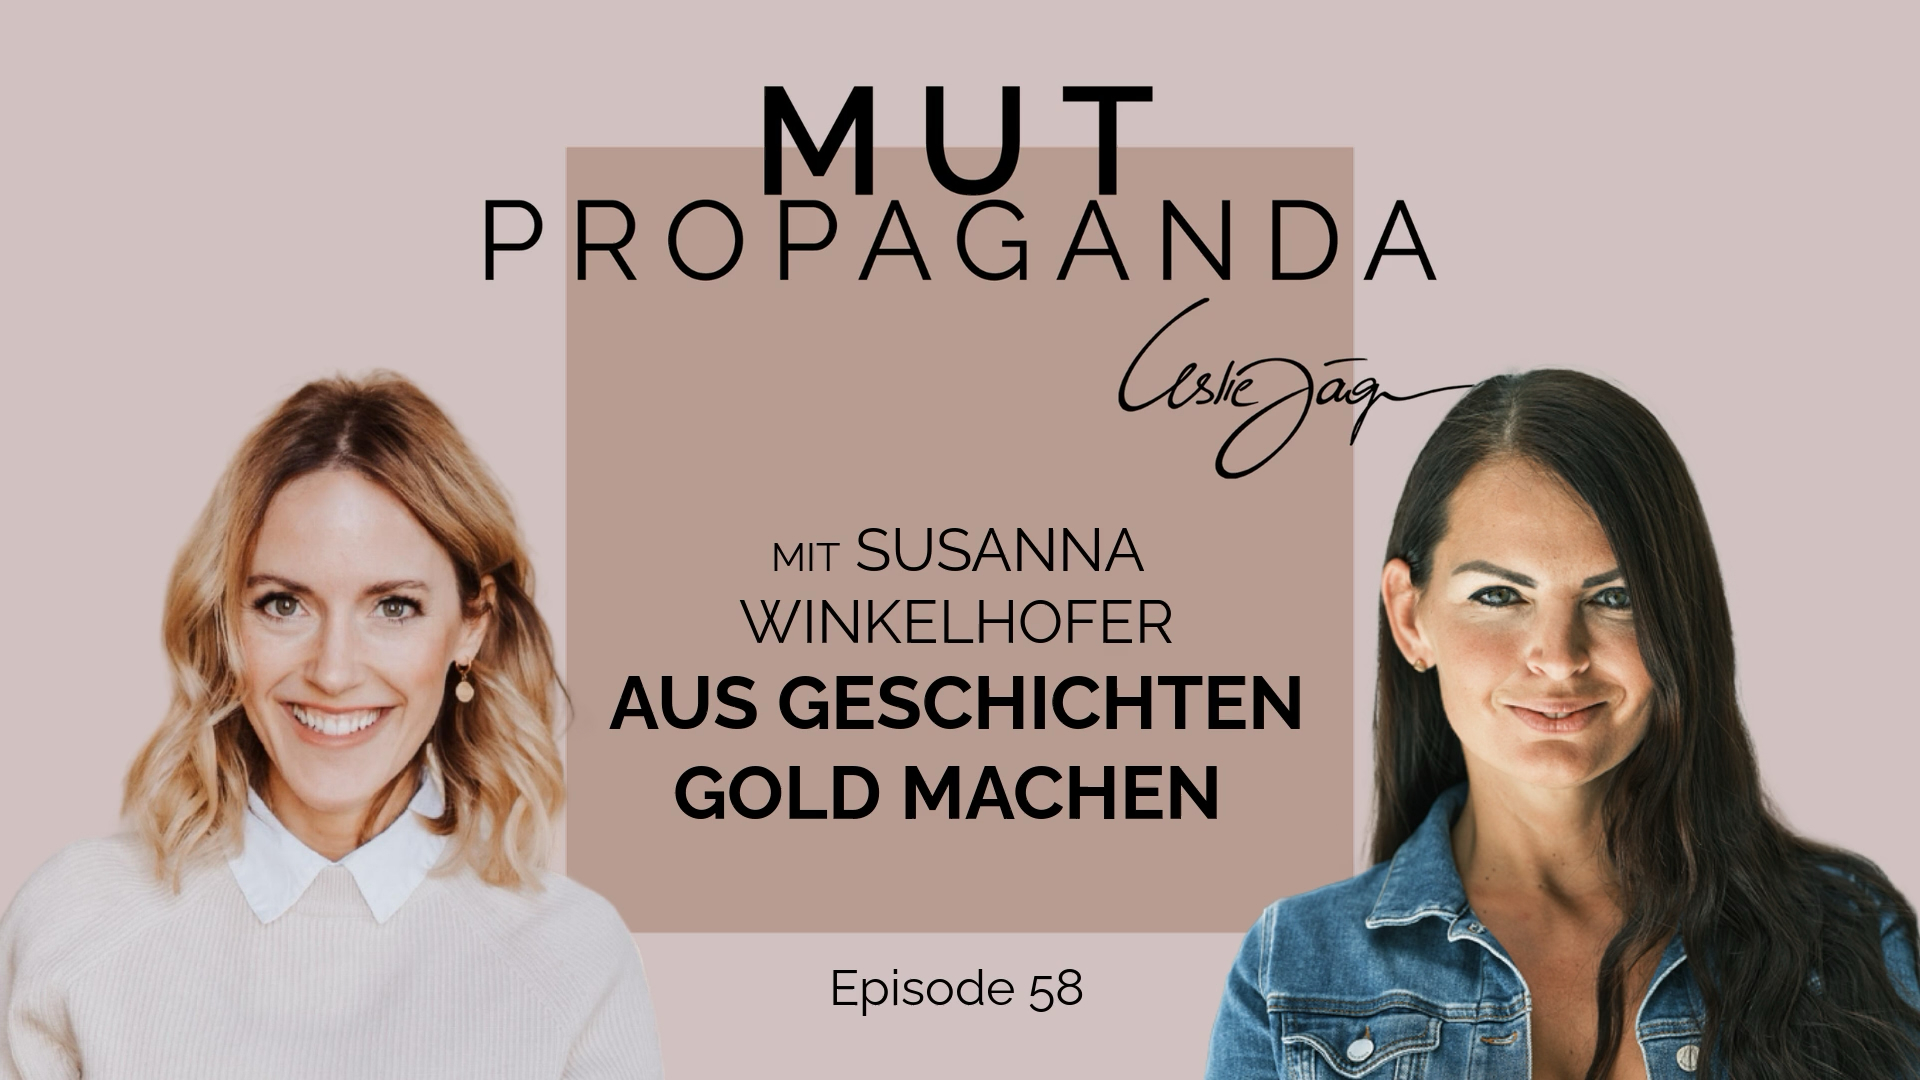 Aus Geschichten Gold machen - im Interview mit Susanna Winkelhofer